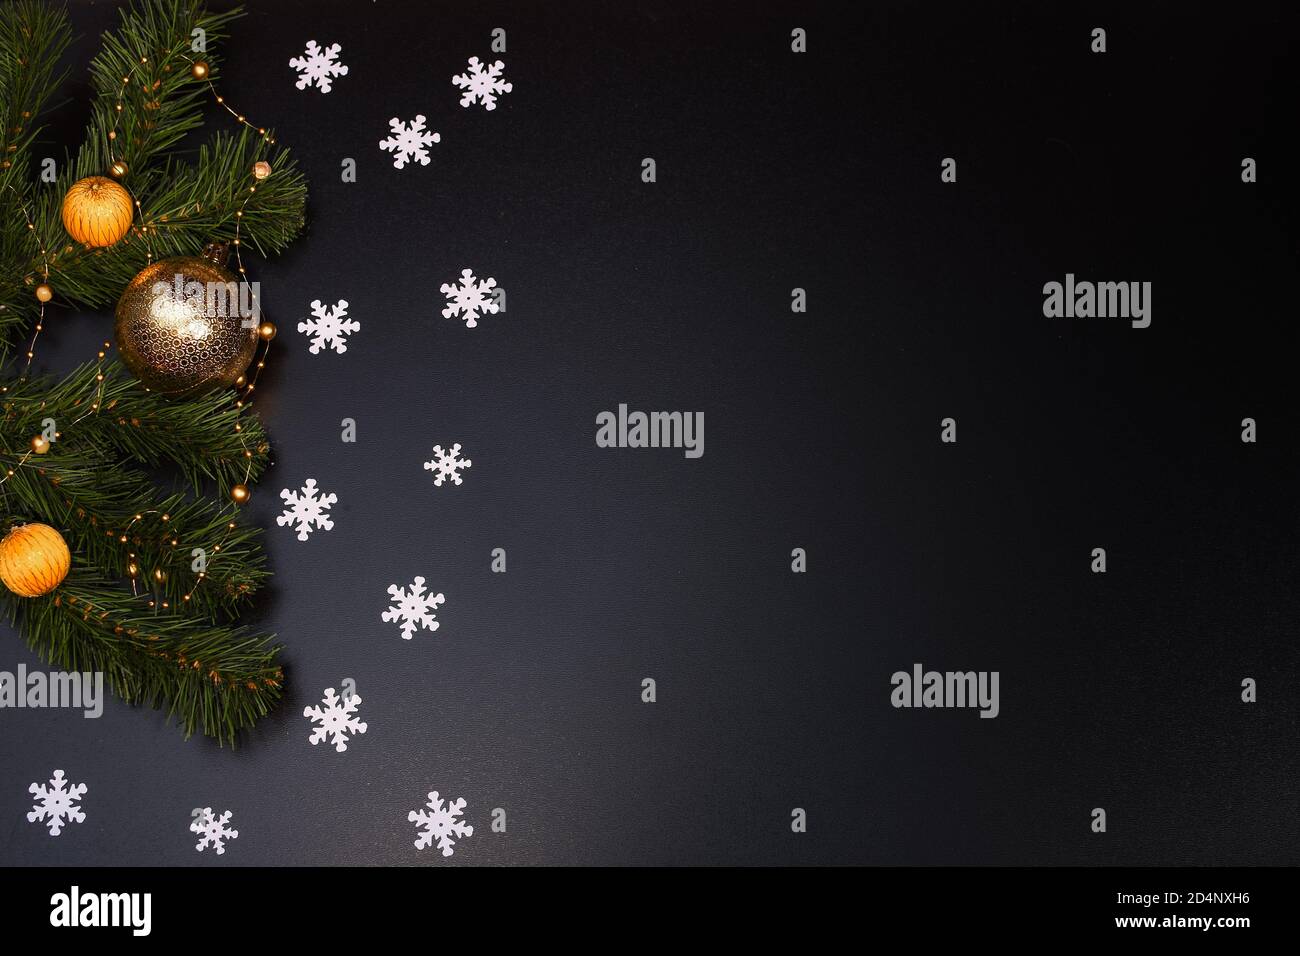 Weihnachtskomposition. Schneeflocken, Fichtenzweige, Weihnachtsspielzeug auf schwarzem Hintergrund. Stockfoto